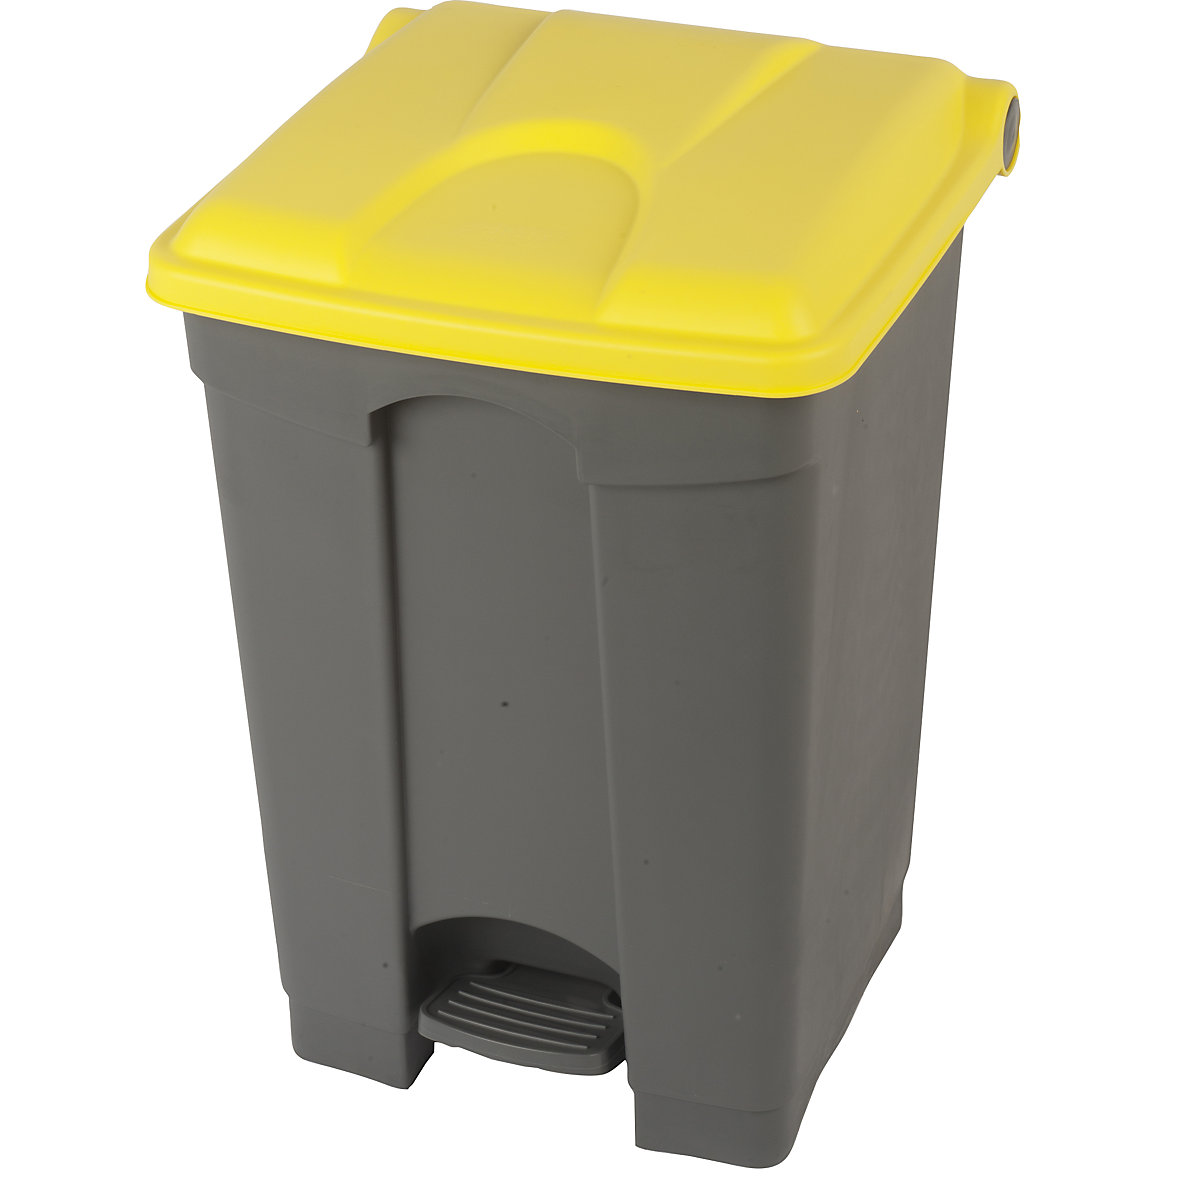 EUROKRAFTbasic – Nádoba na odpad s pedálem, objem 45 l, š x v x h 410 x 600 x 400 mm, šedá, žluté víko